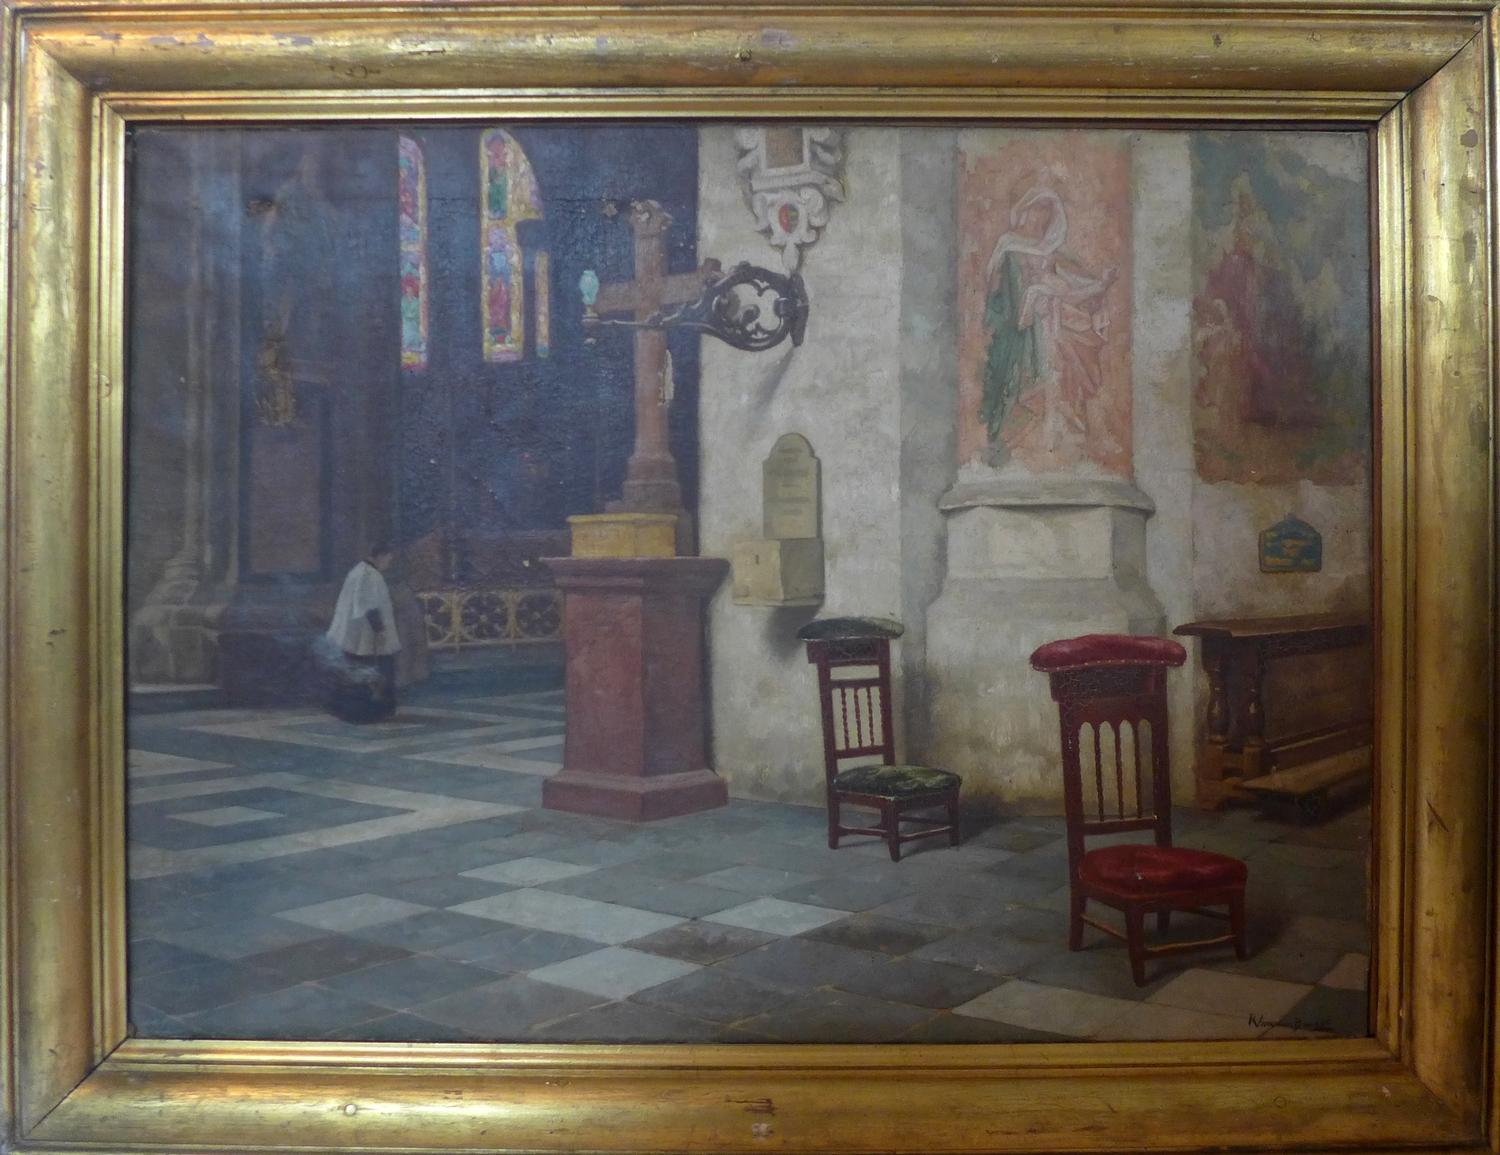 R. Van Der Brugge (19th century Flemish school), interior church scene, oil on canvas, damage to - Bild 2 aus 2